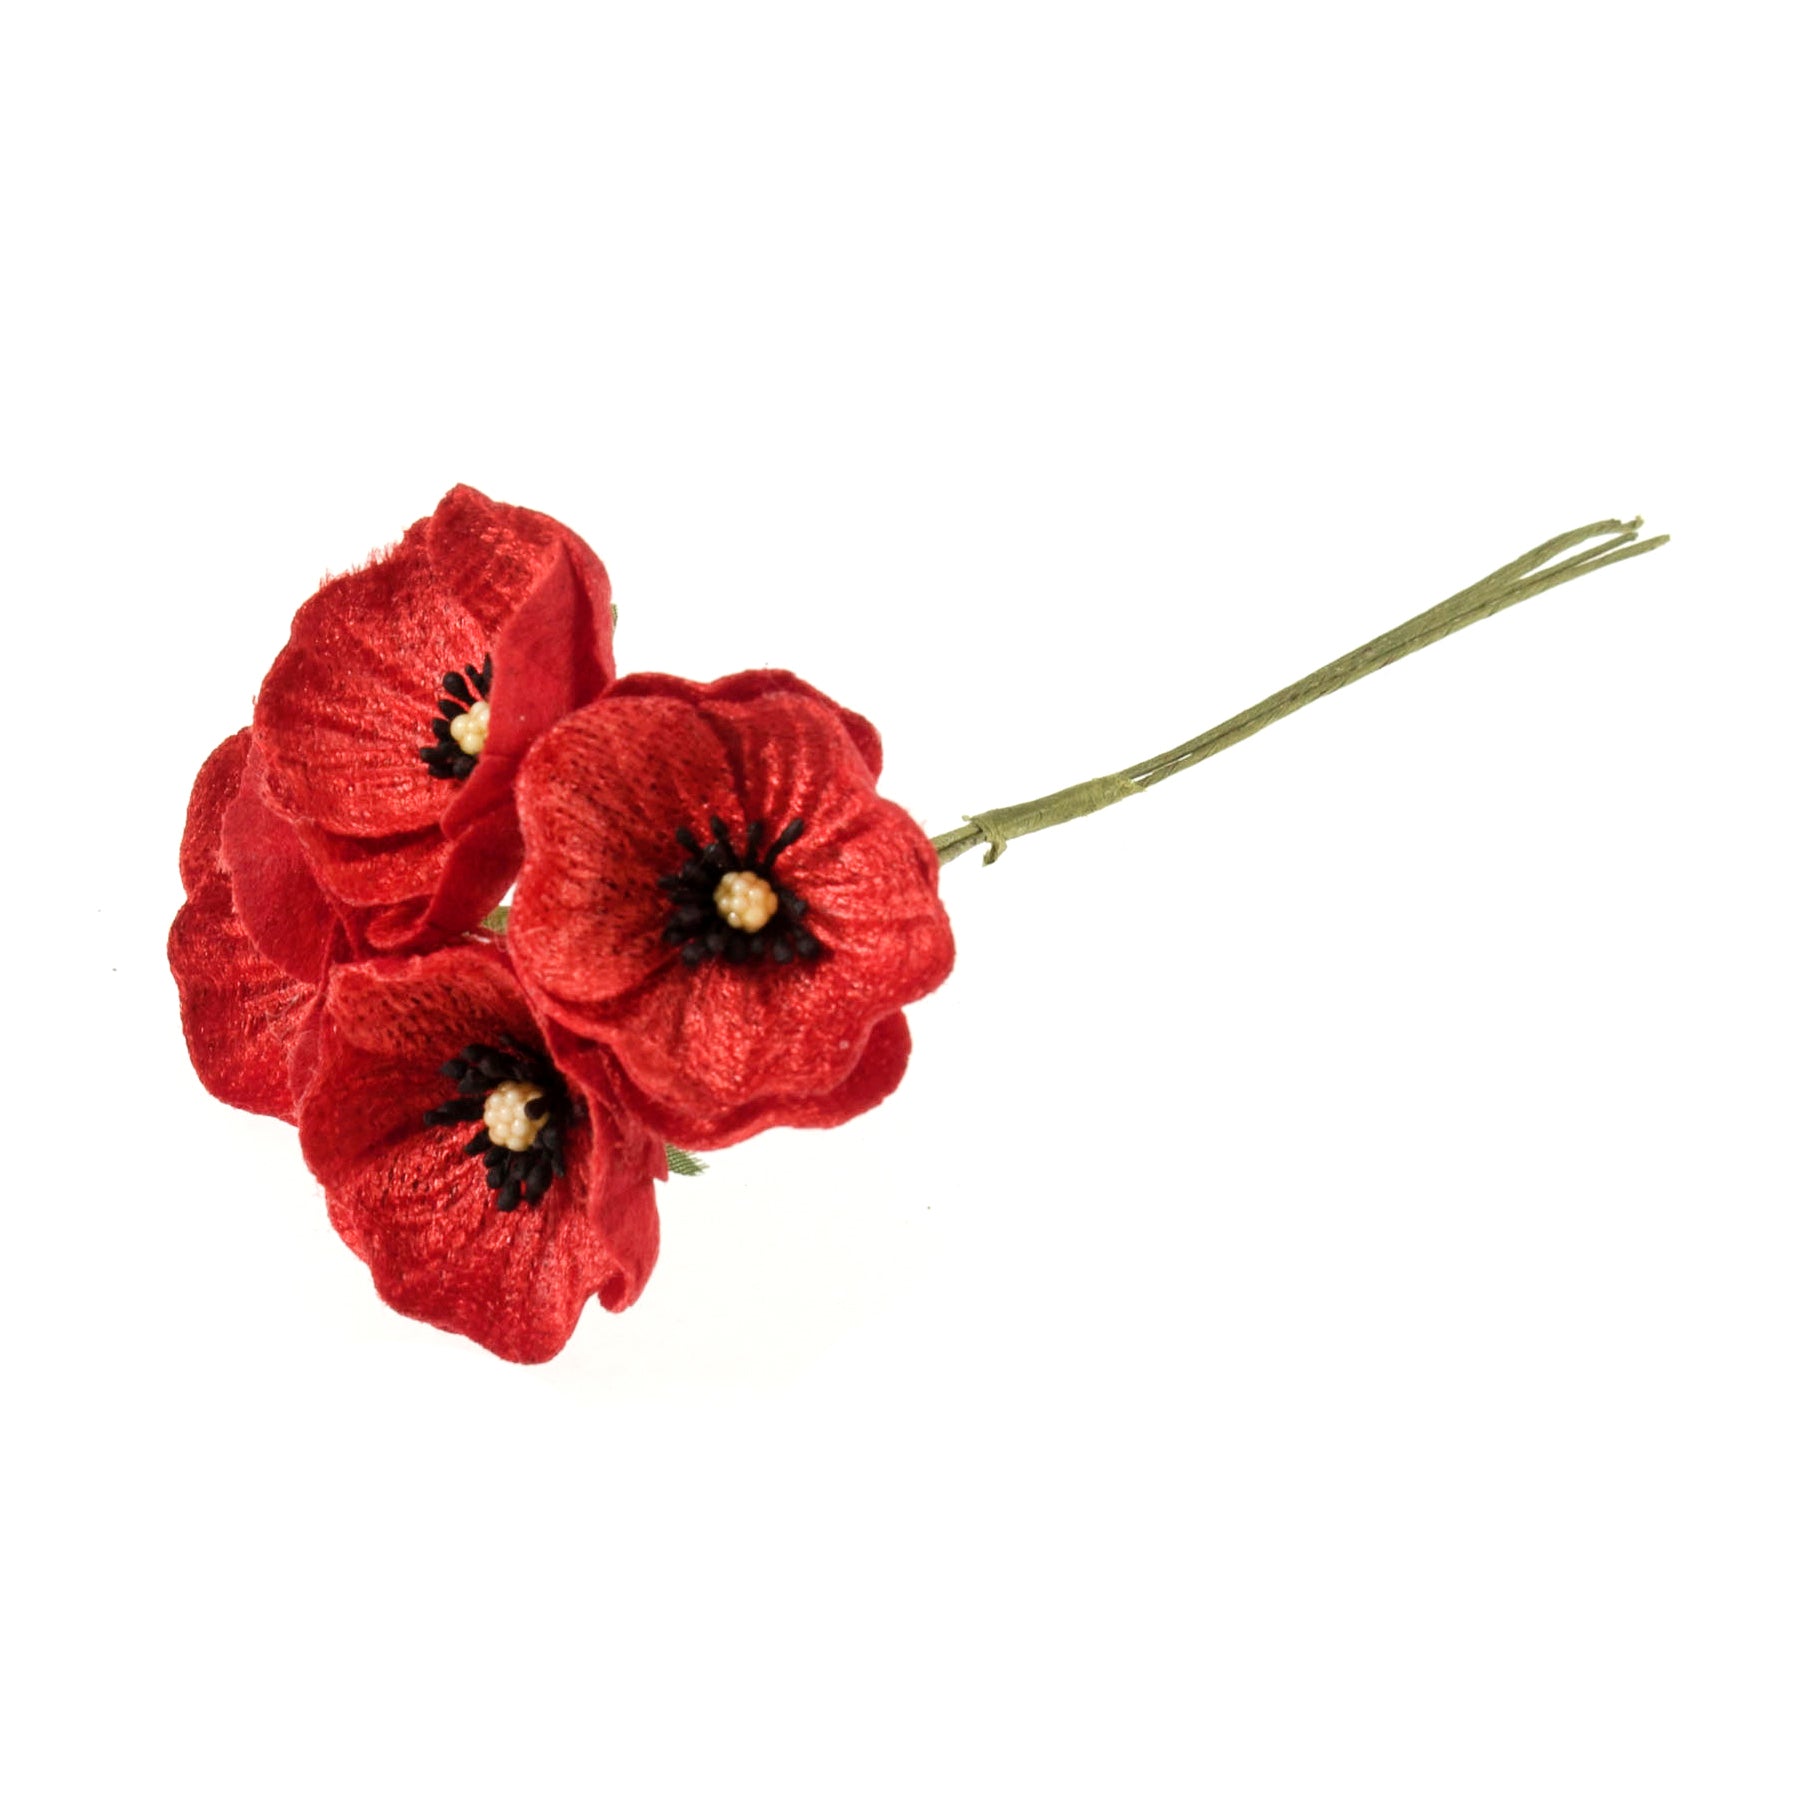 Small Red Velvet Poppies - 4 Stems